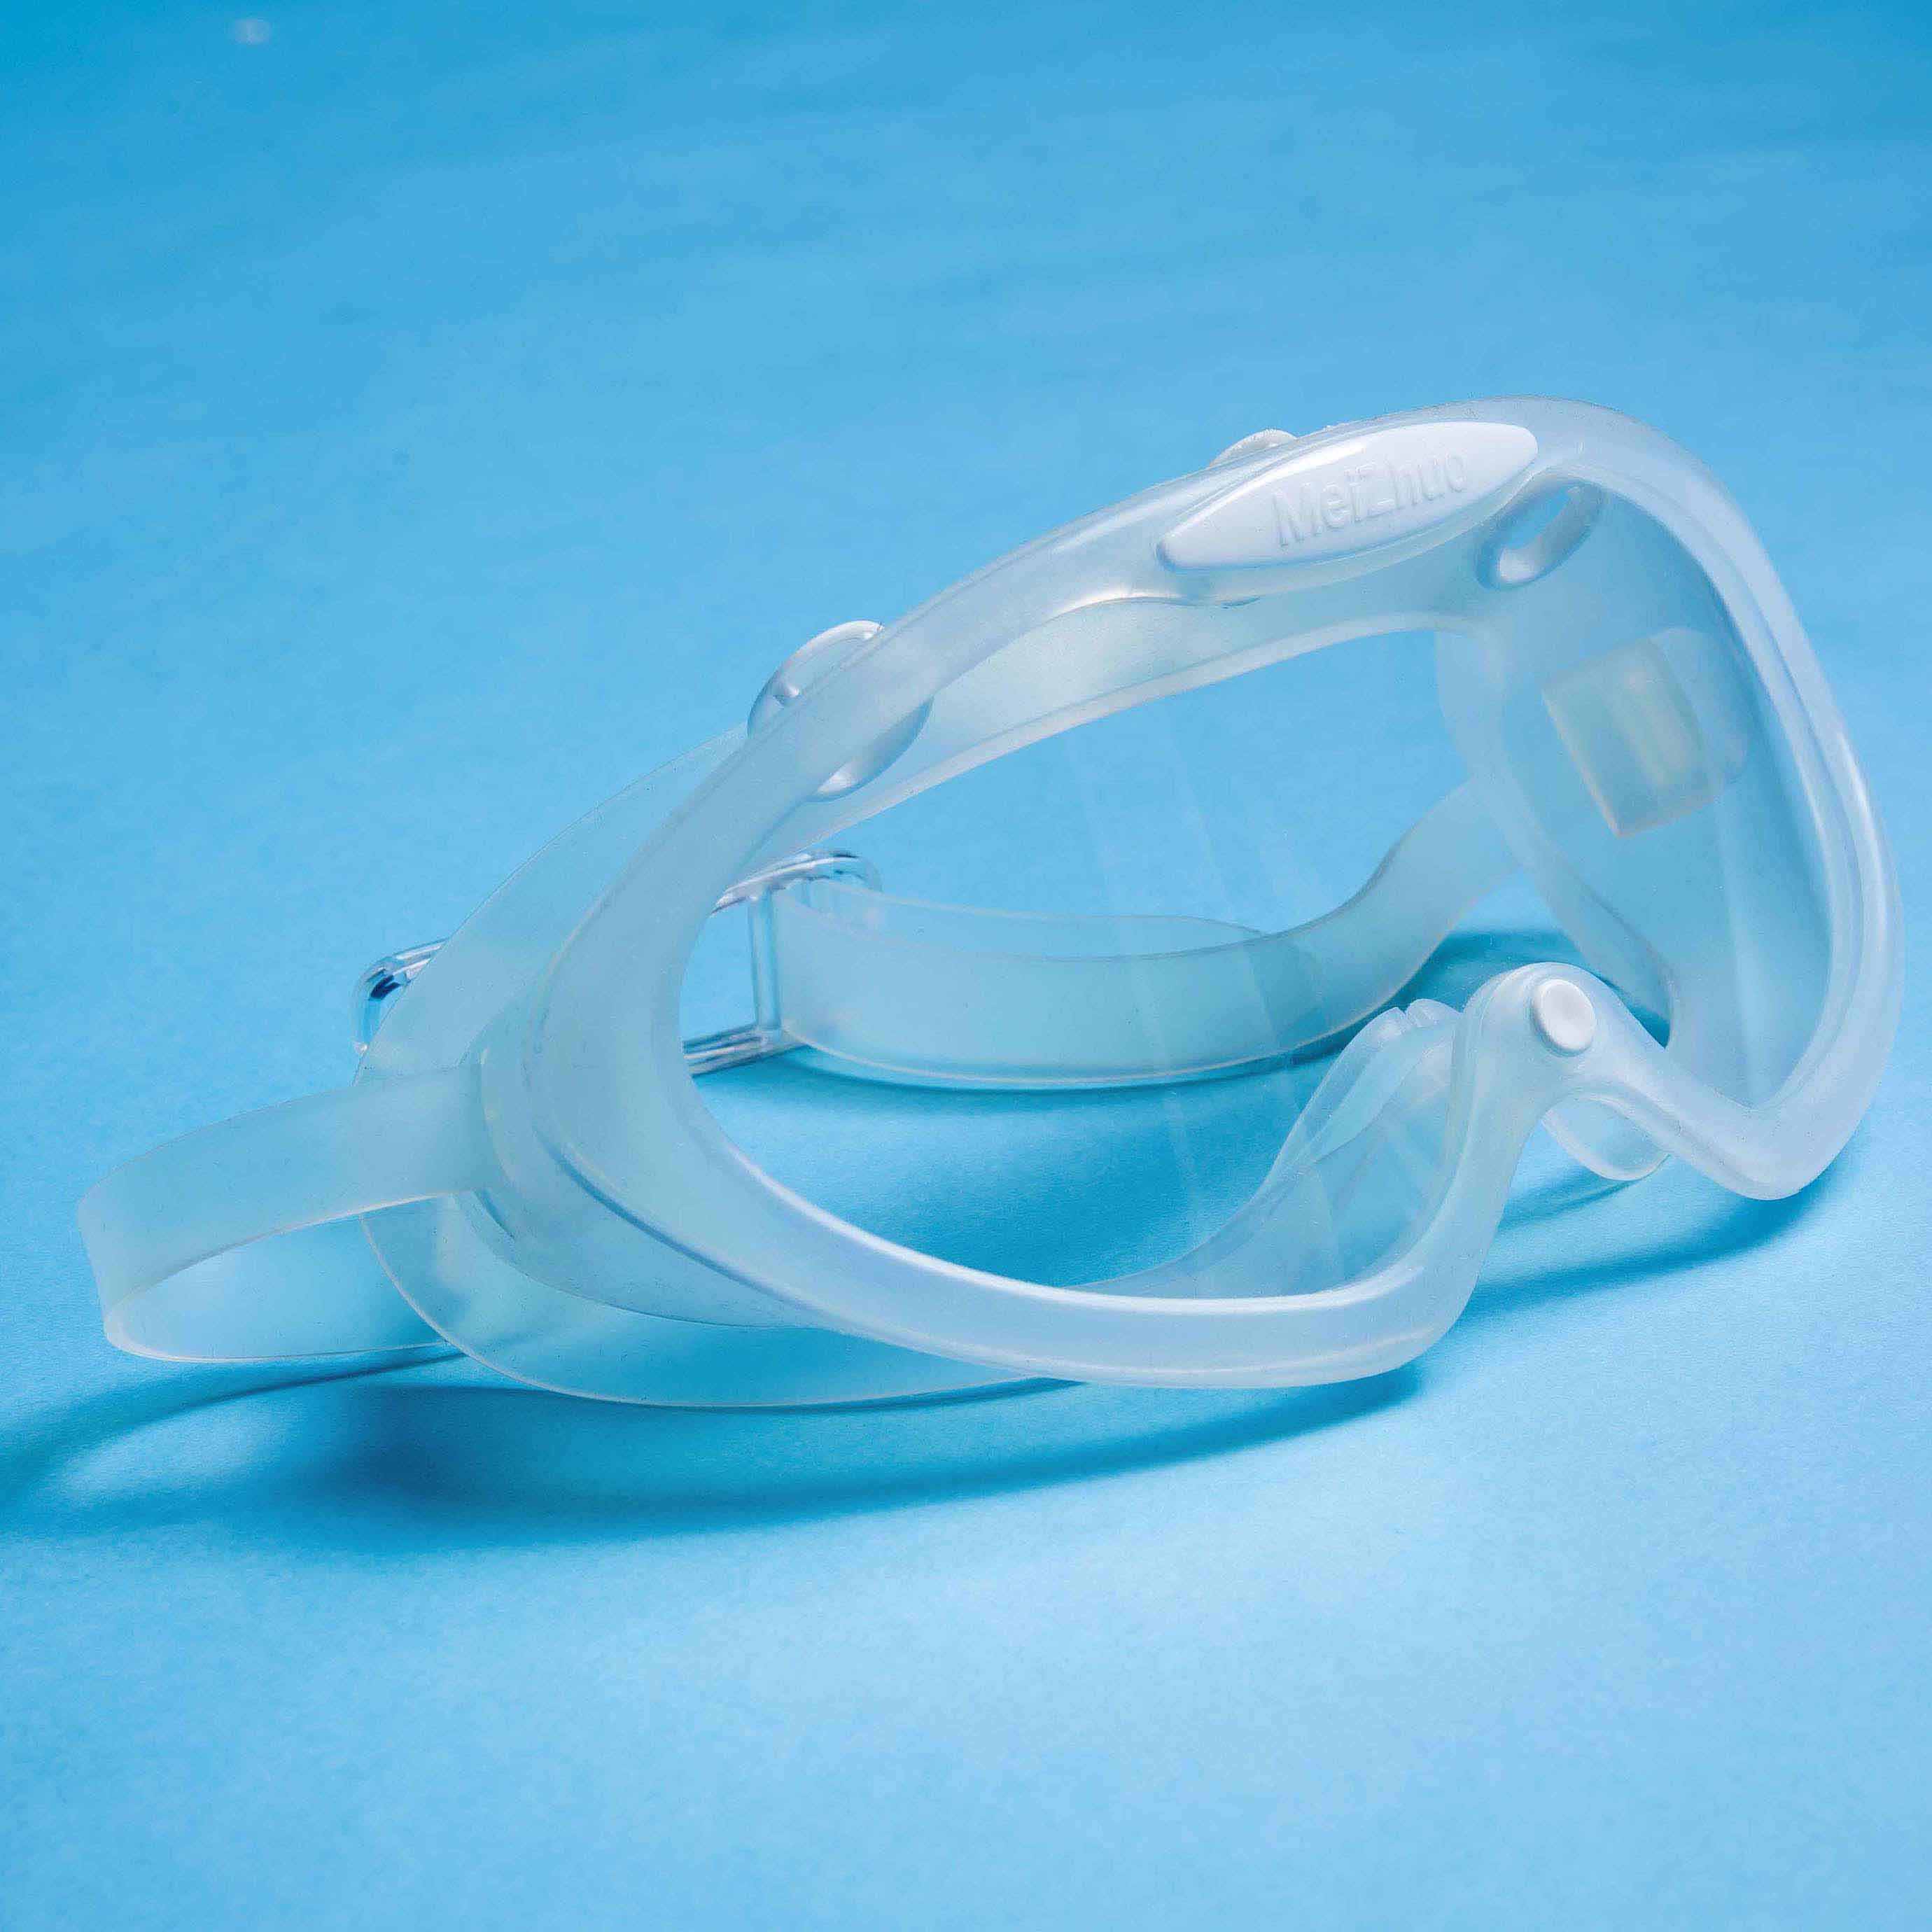 可重复蒸汽灭菌防护眼镜BCAH/洁净室安全眼罩